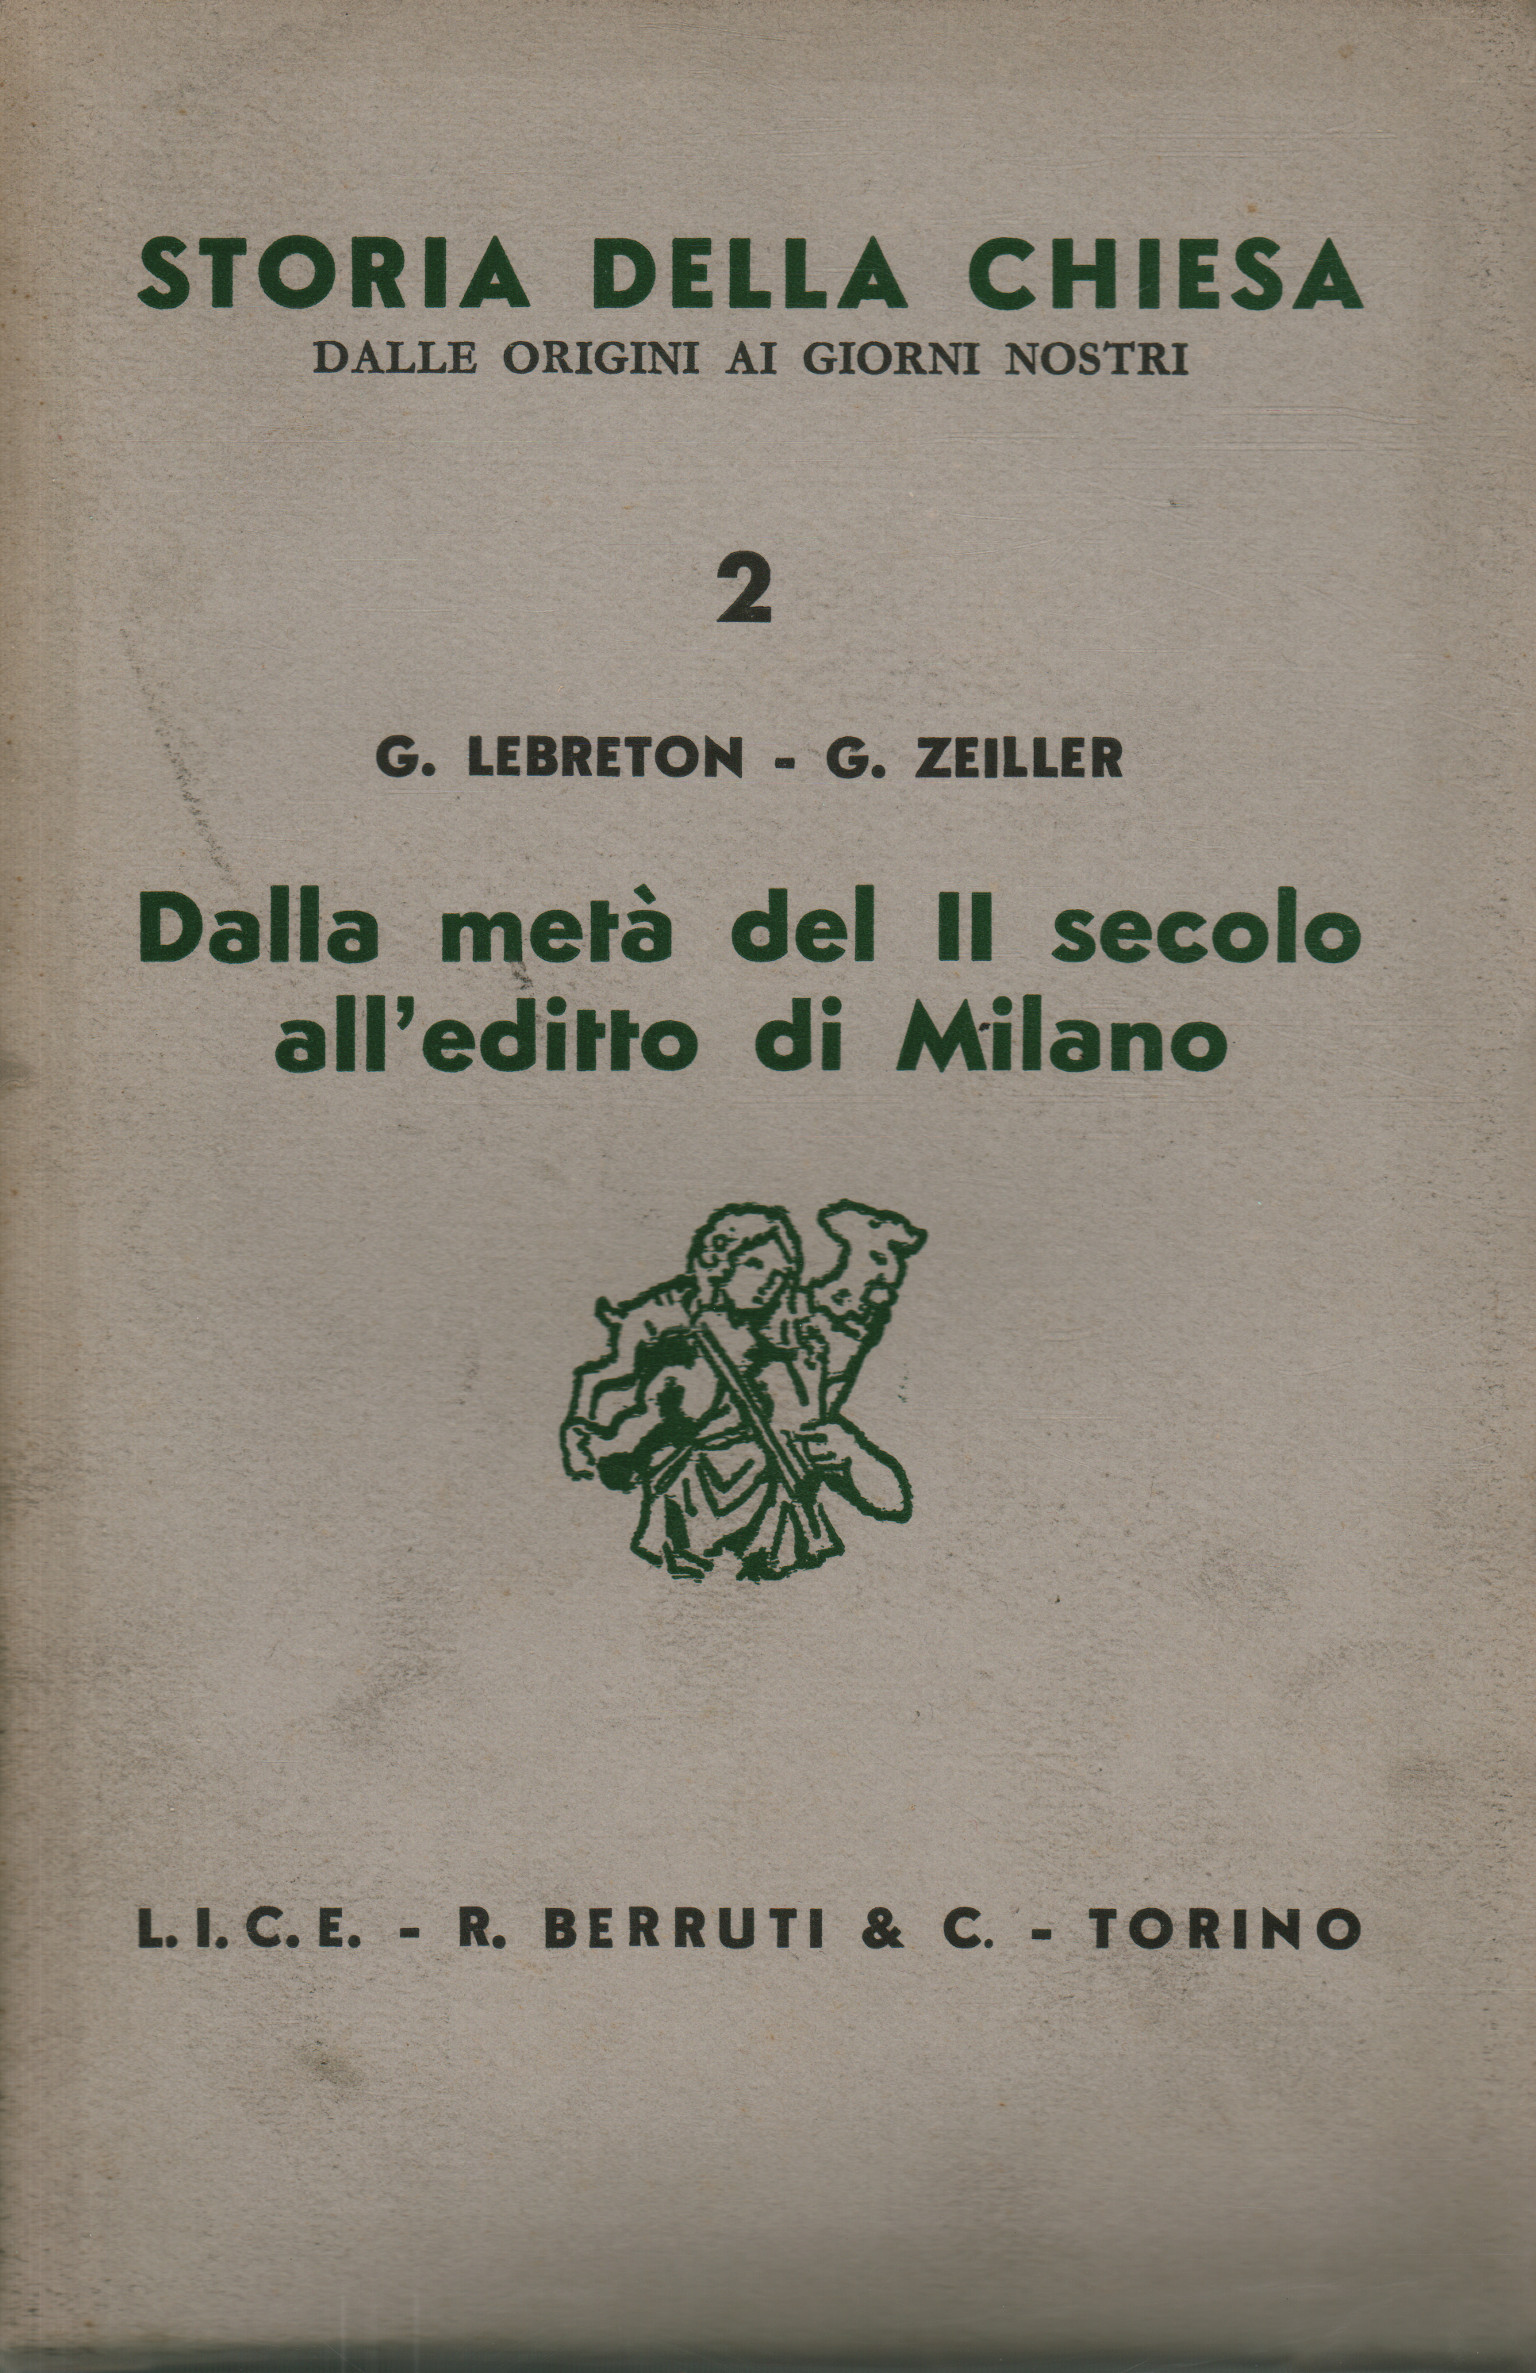 Dalla metà del II secolo all'editto di Milano, G. Lebreton G. Zeiller